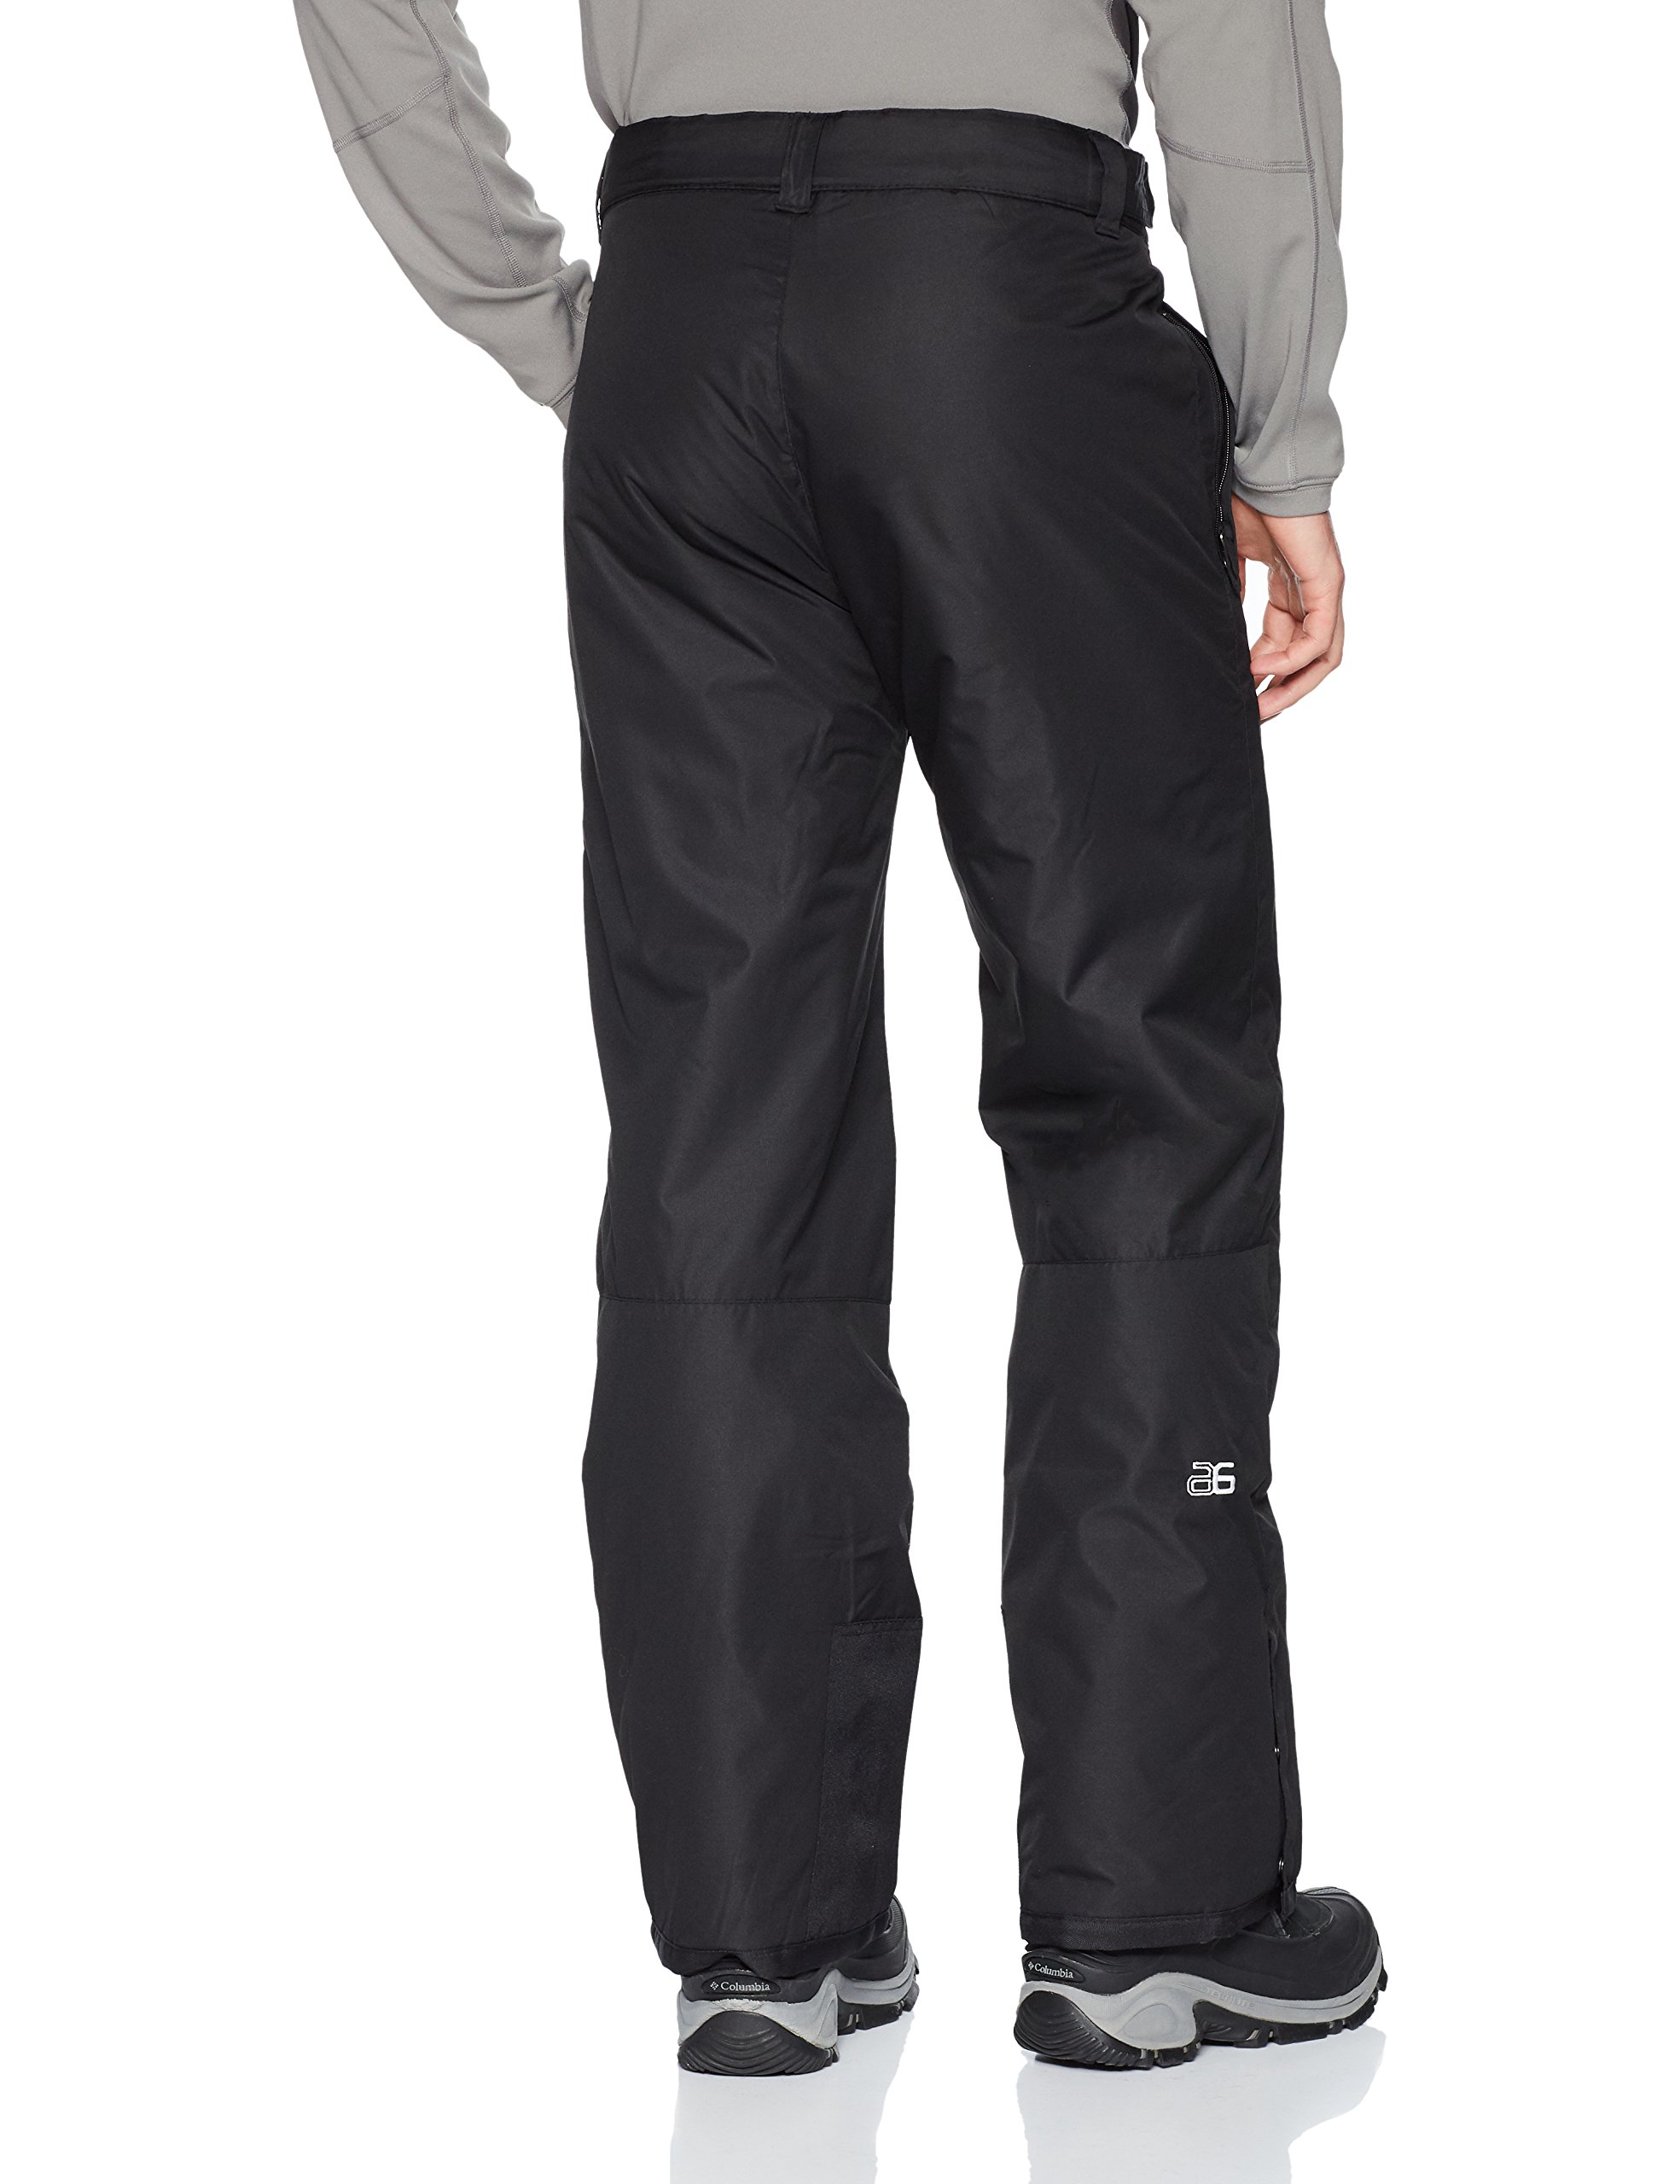 ARCTIX Men's Essential Snow Pants Regular 3xl Black Fast for sale ...